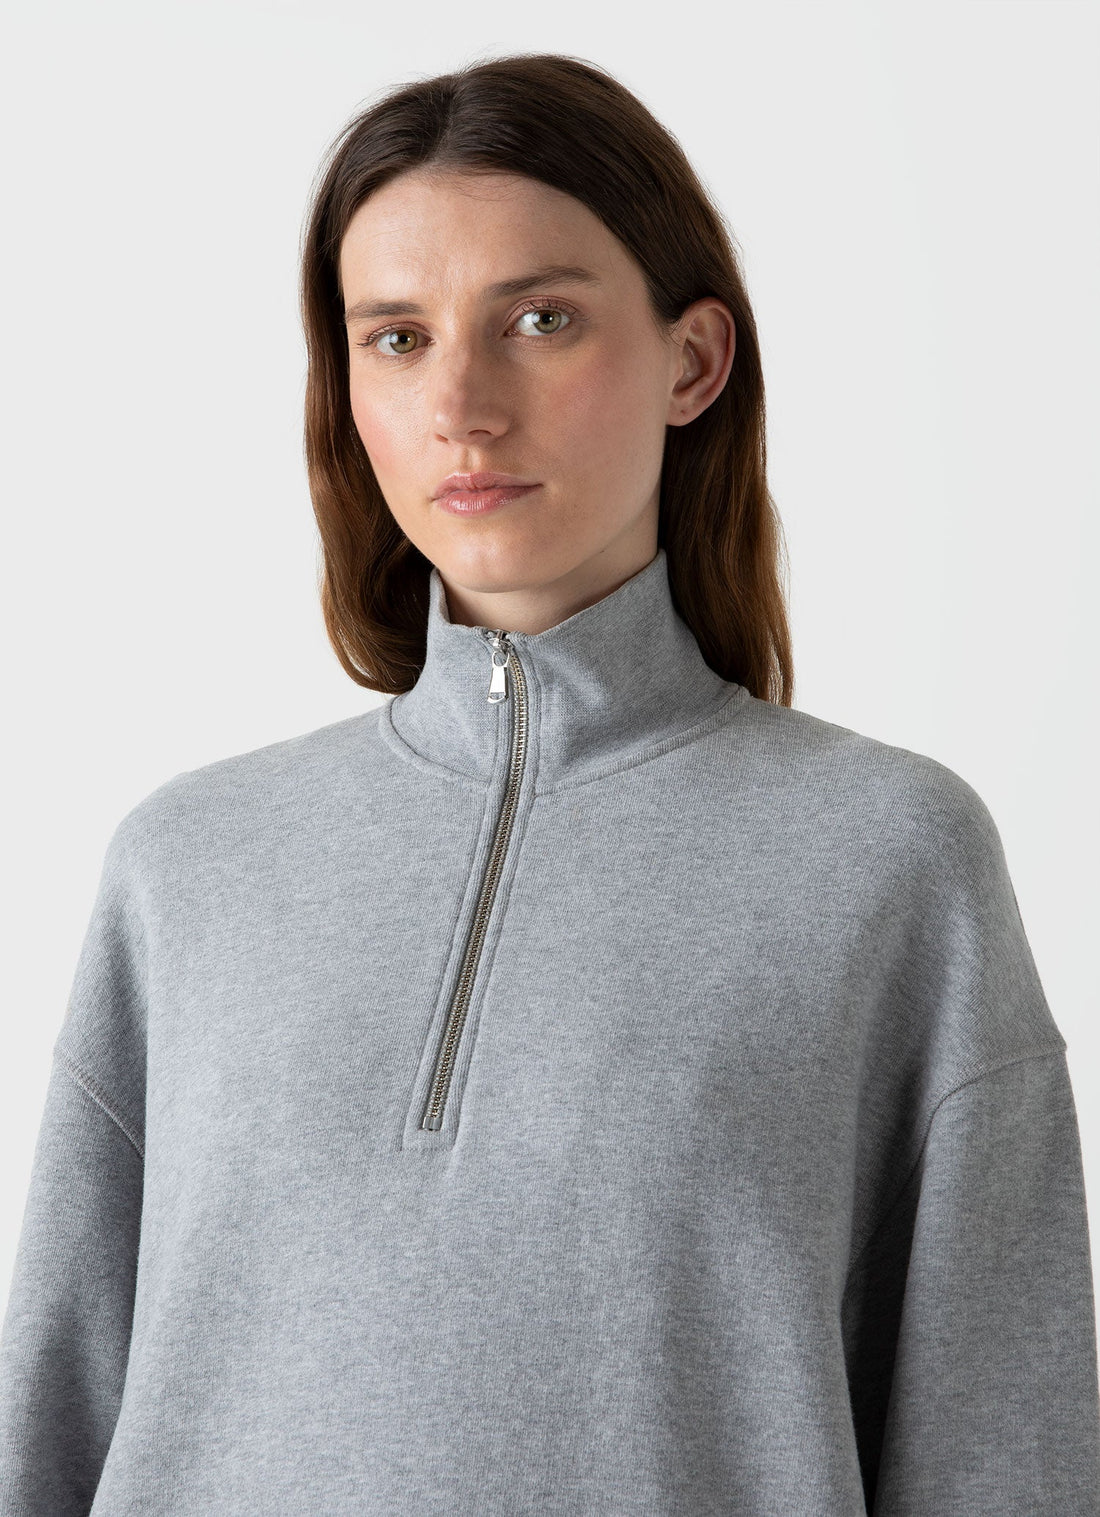 Women's Half Zip Loopback Sweatshirt in Grey Melange